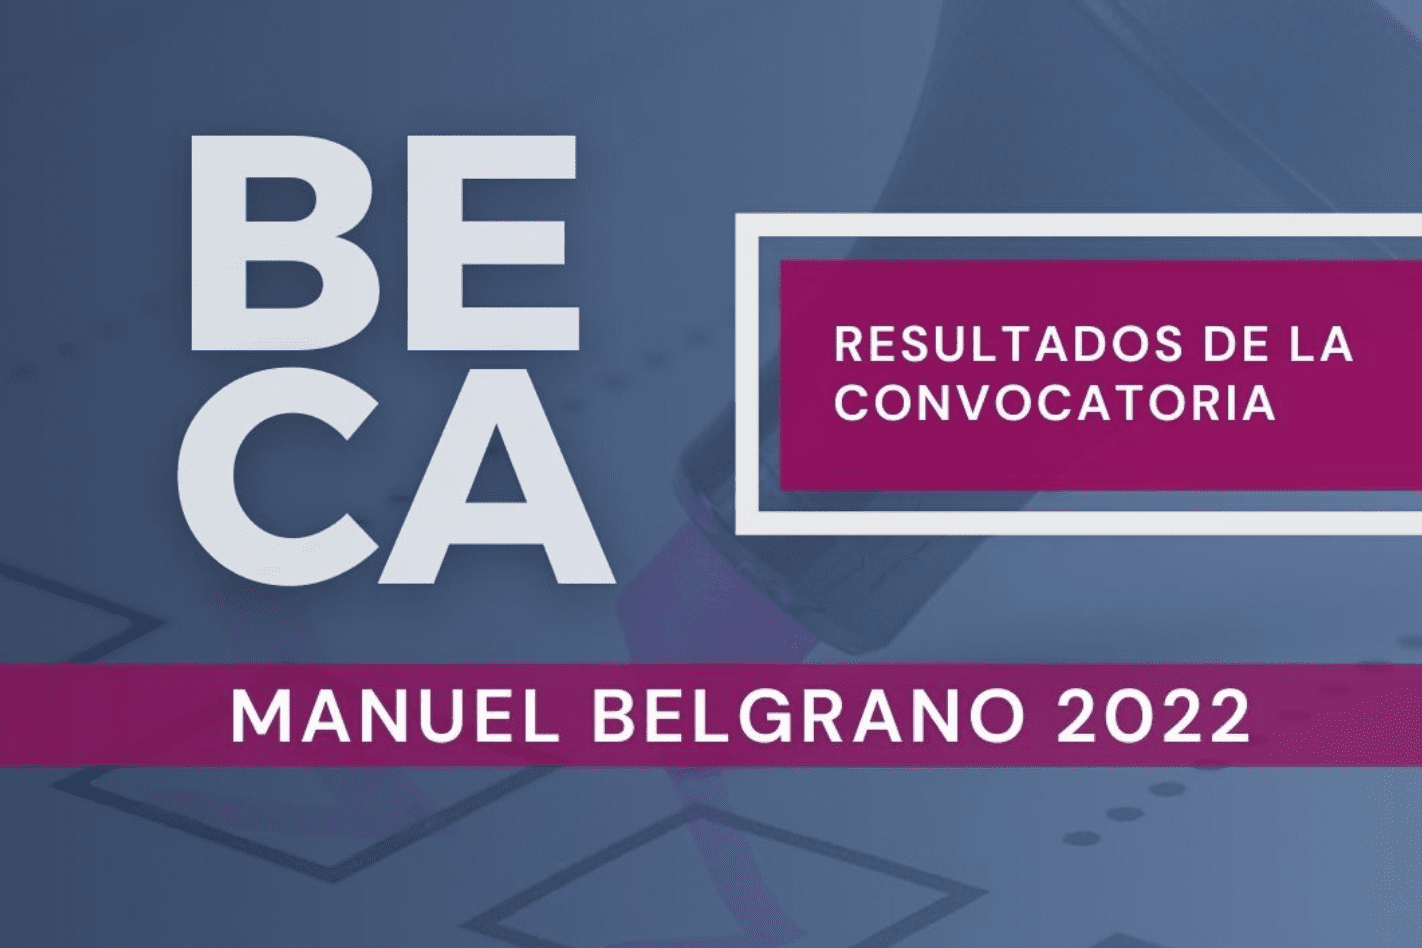 BECAS MANUEL BELGRANO 2022 - INFORMACION IMPORTANTE